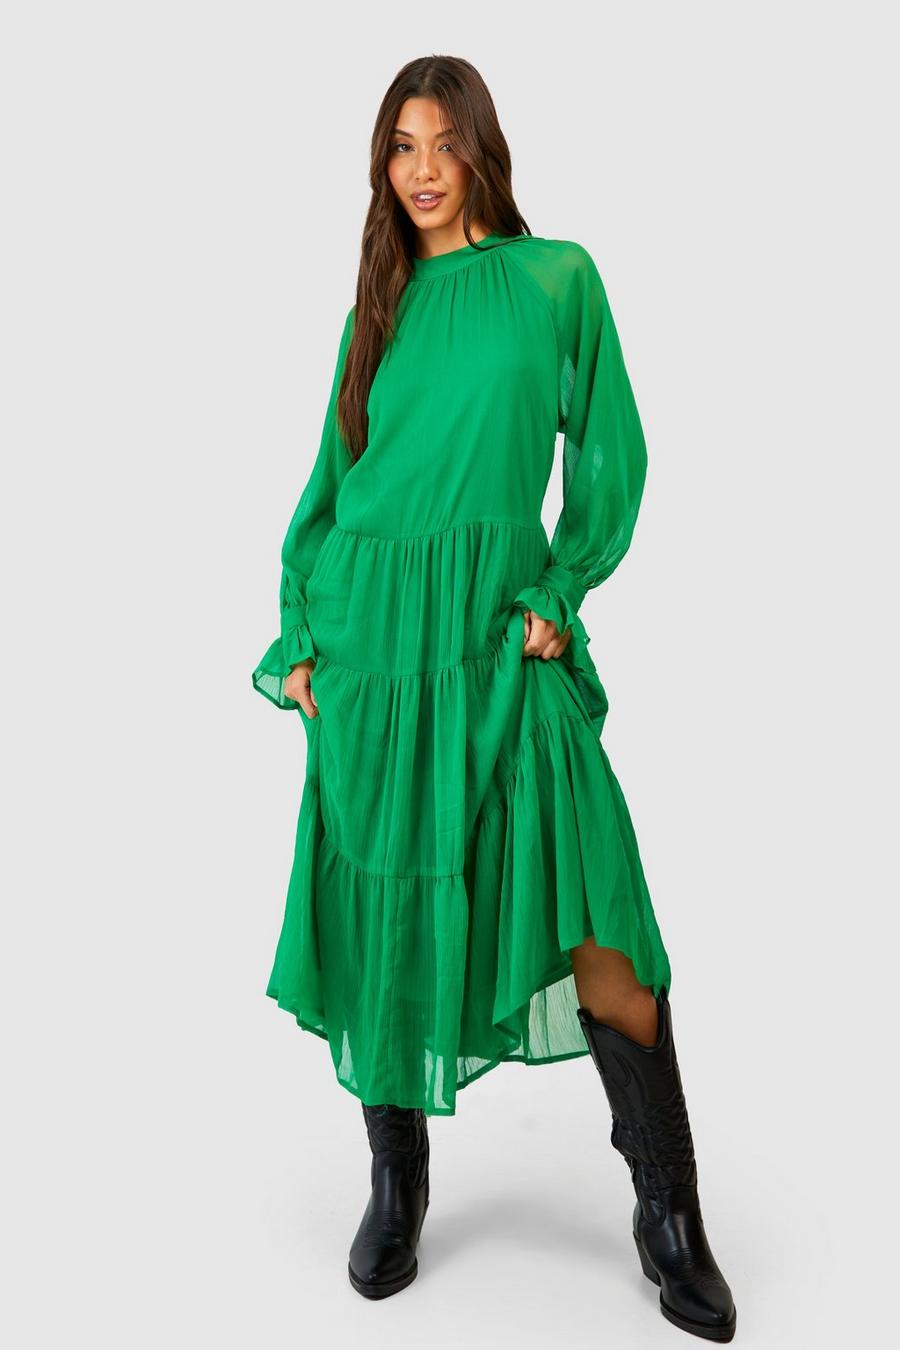 Bright green Chiffon Tiered Midaxi Dress